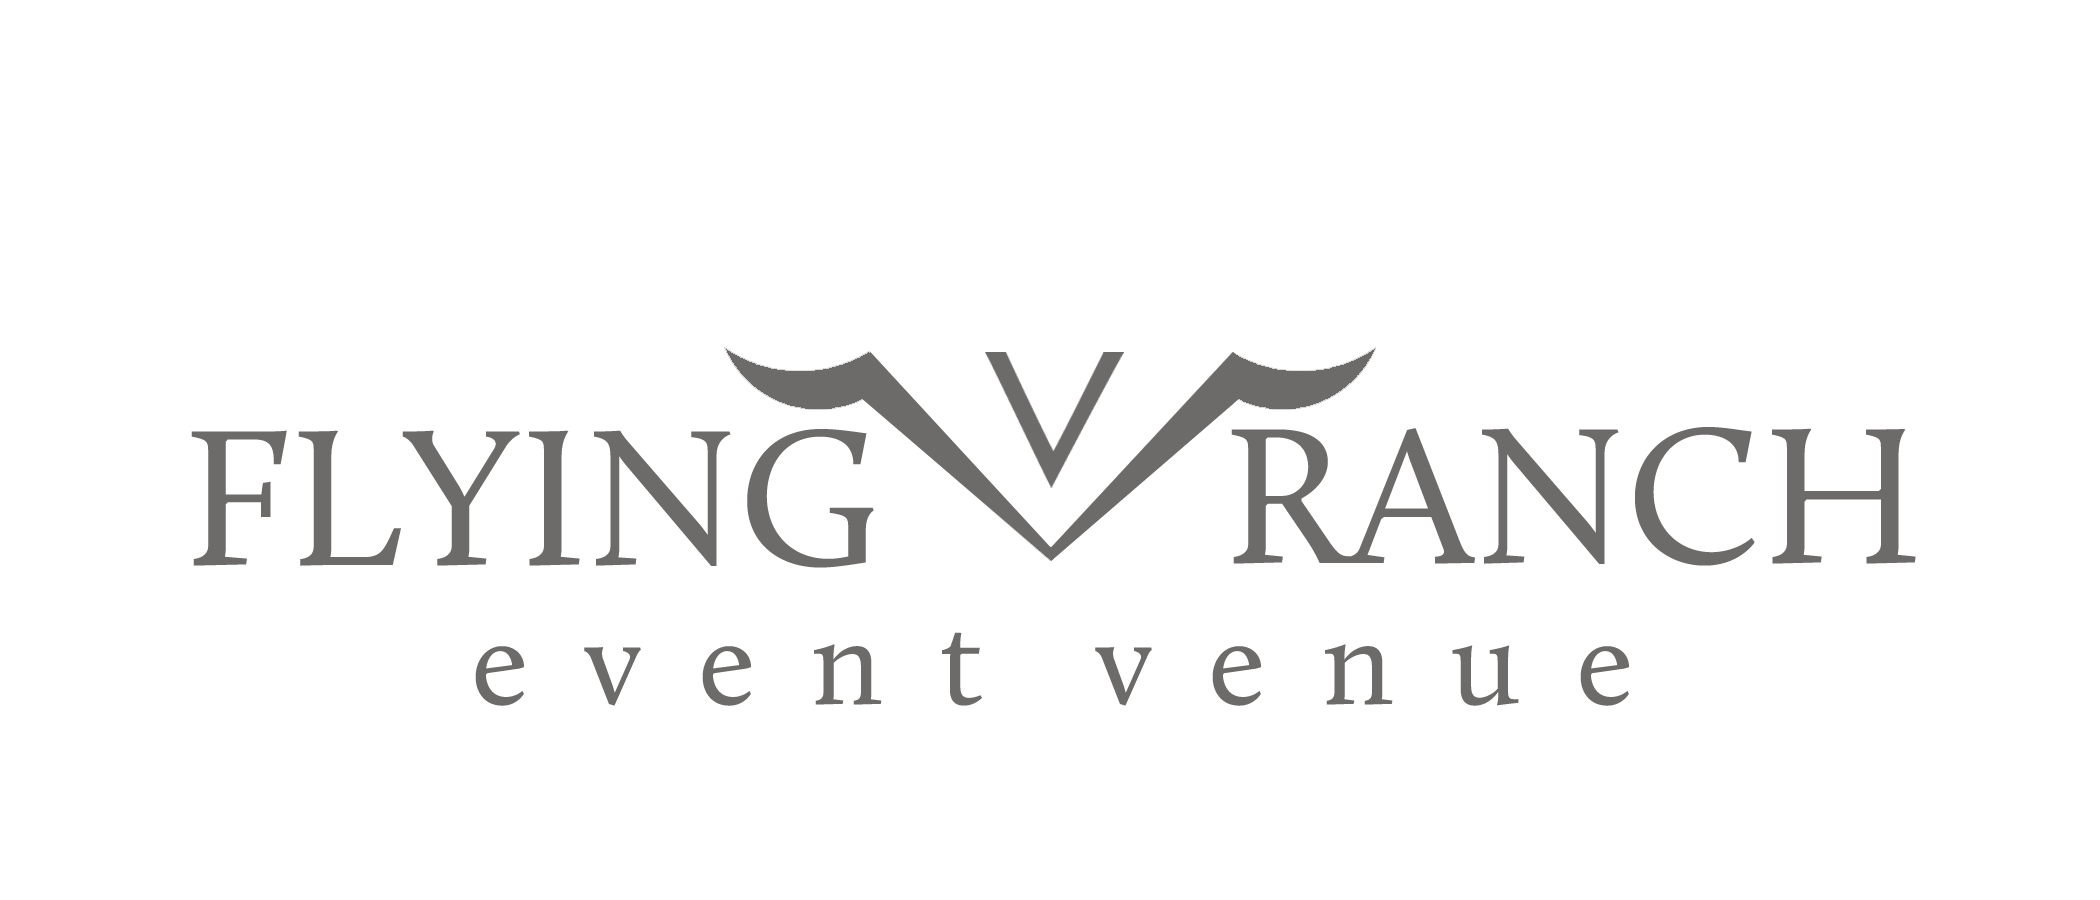 Flying V Ranch Event Venue